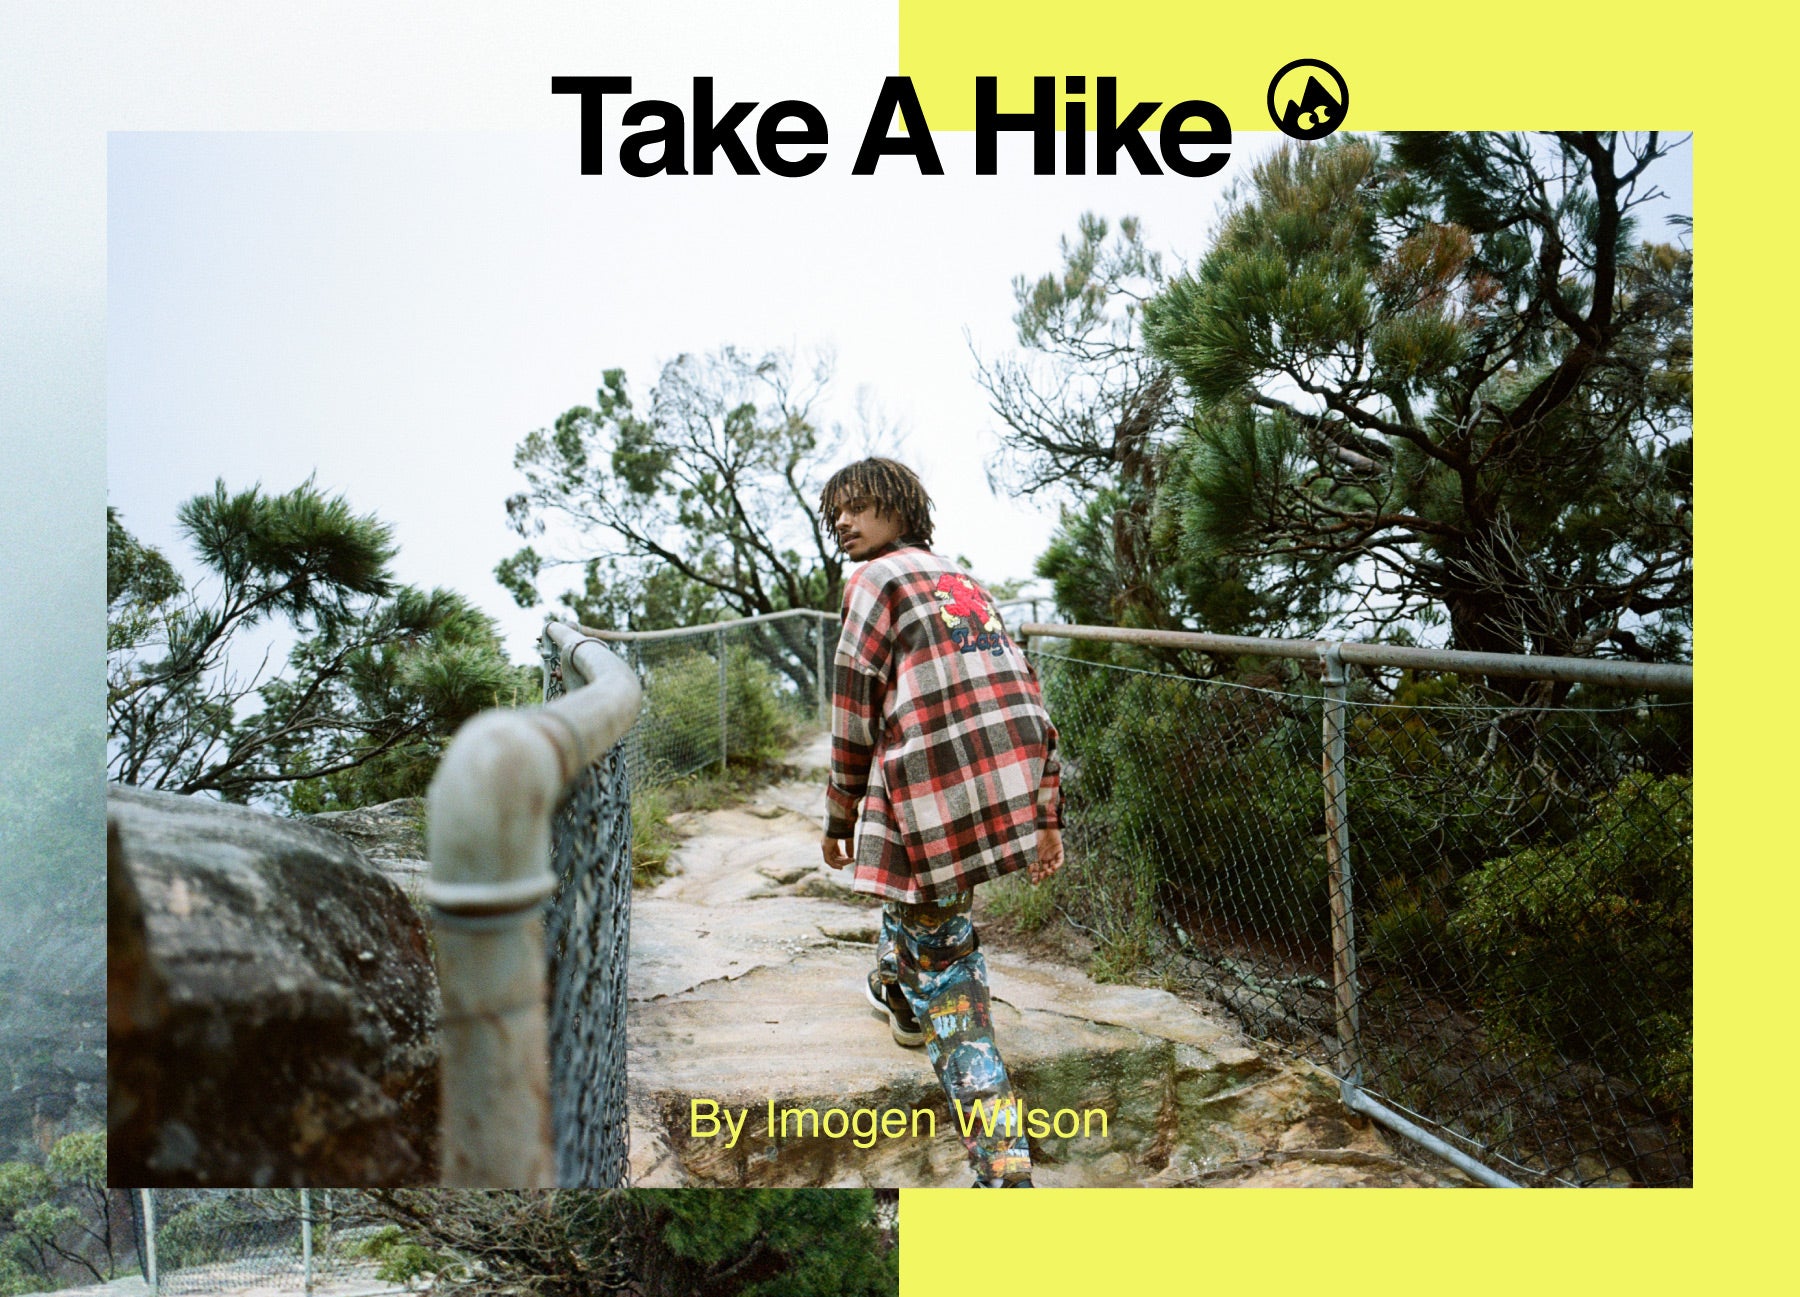 Take a Hike by Imogen Wilson